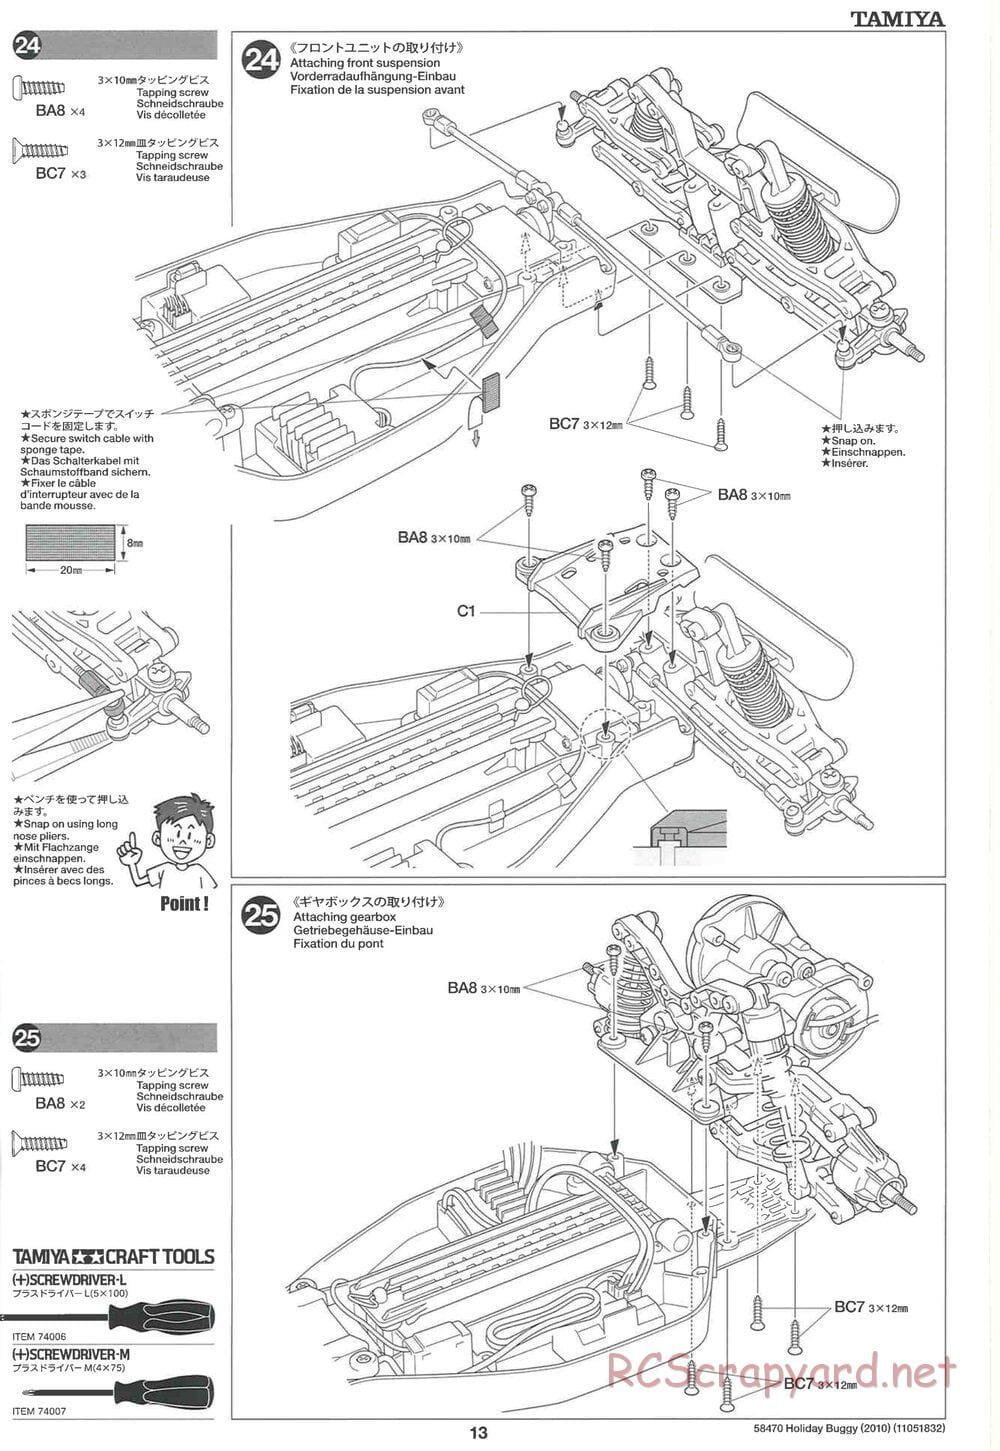 Tamiya - Holiday Buggy 2010 Chassis - Manual - Page 13